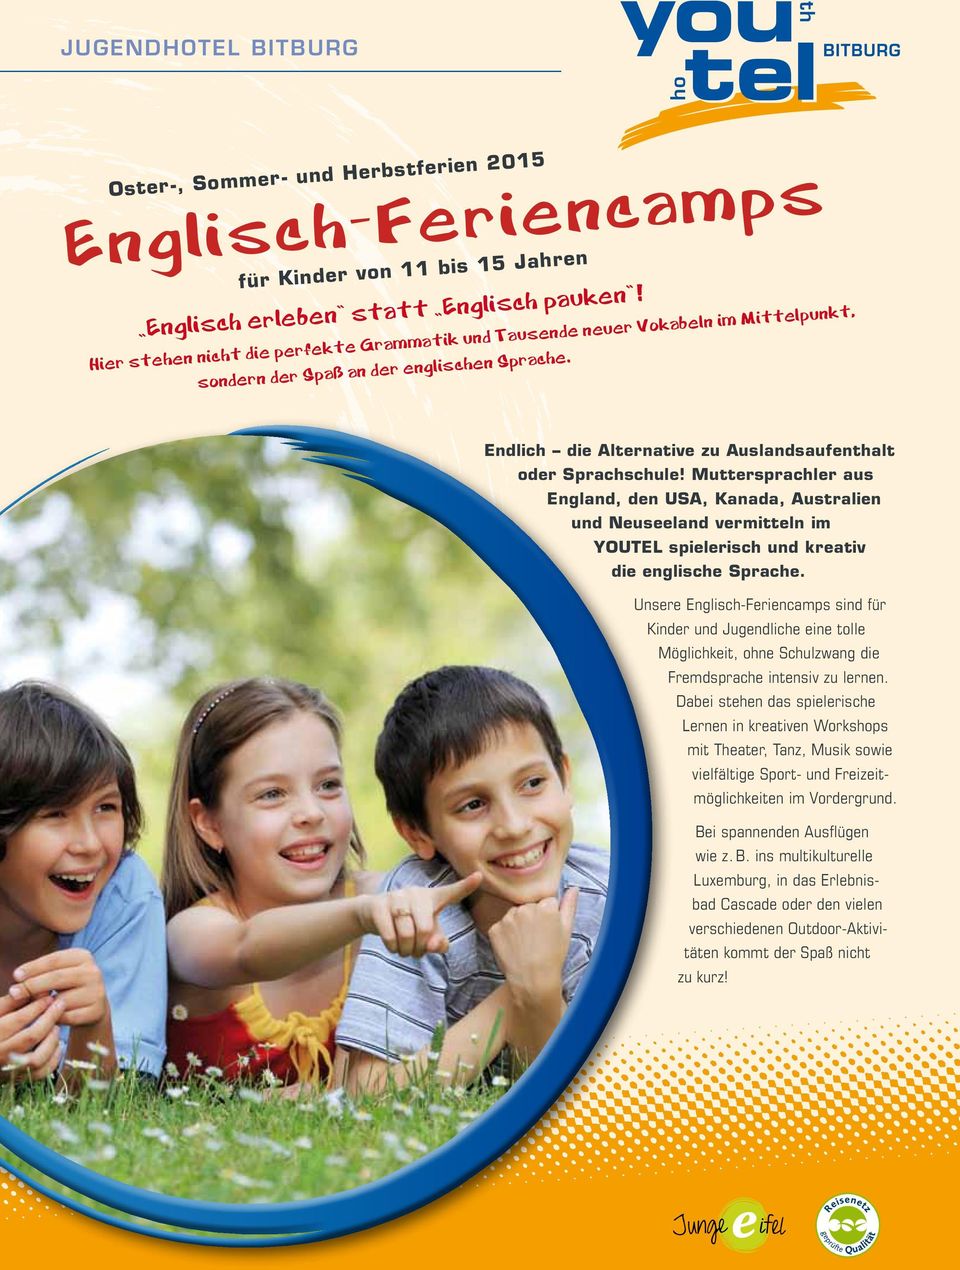 Muttersprachler aus England, den USA, Kanada, Australien und Neuseeland vermitteln im YOUTEL spielerisch und kreativ die englische Sprache.